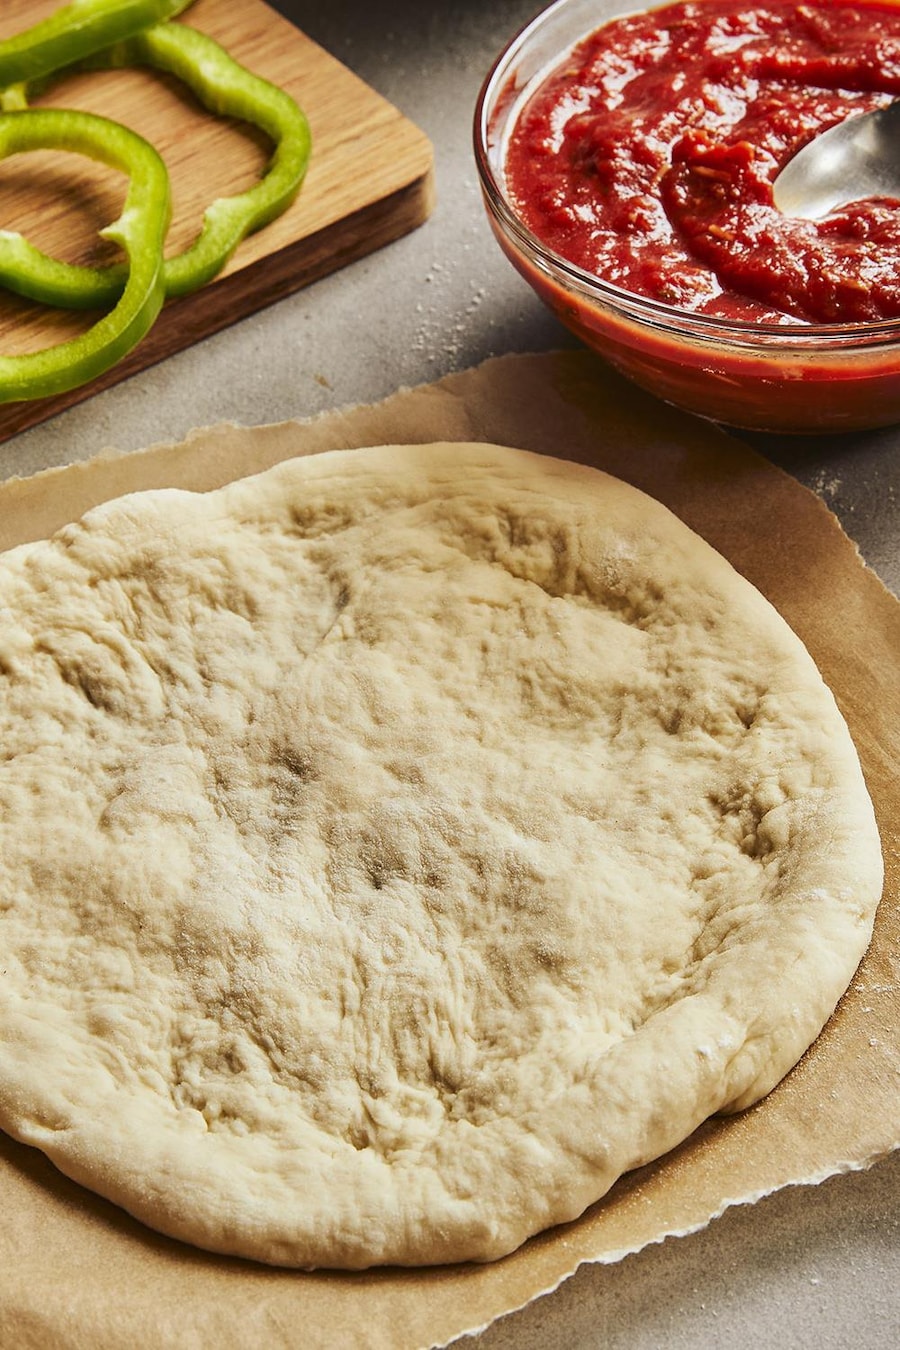 Une pâte à pizza déjà étirée est posée sur un papier parchemin. Autour, il y a une planche avec des légumes coupés et du pepperoni, un bol de sauce à pizza, un bol de fromage et un bol de farine.